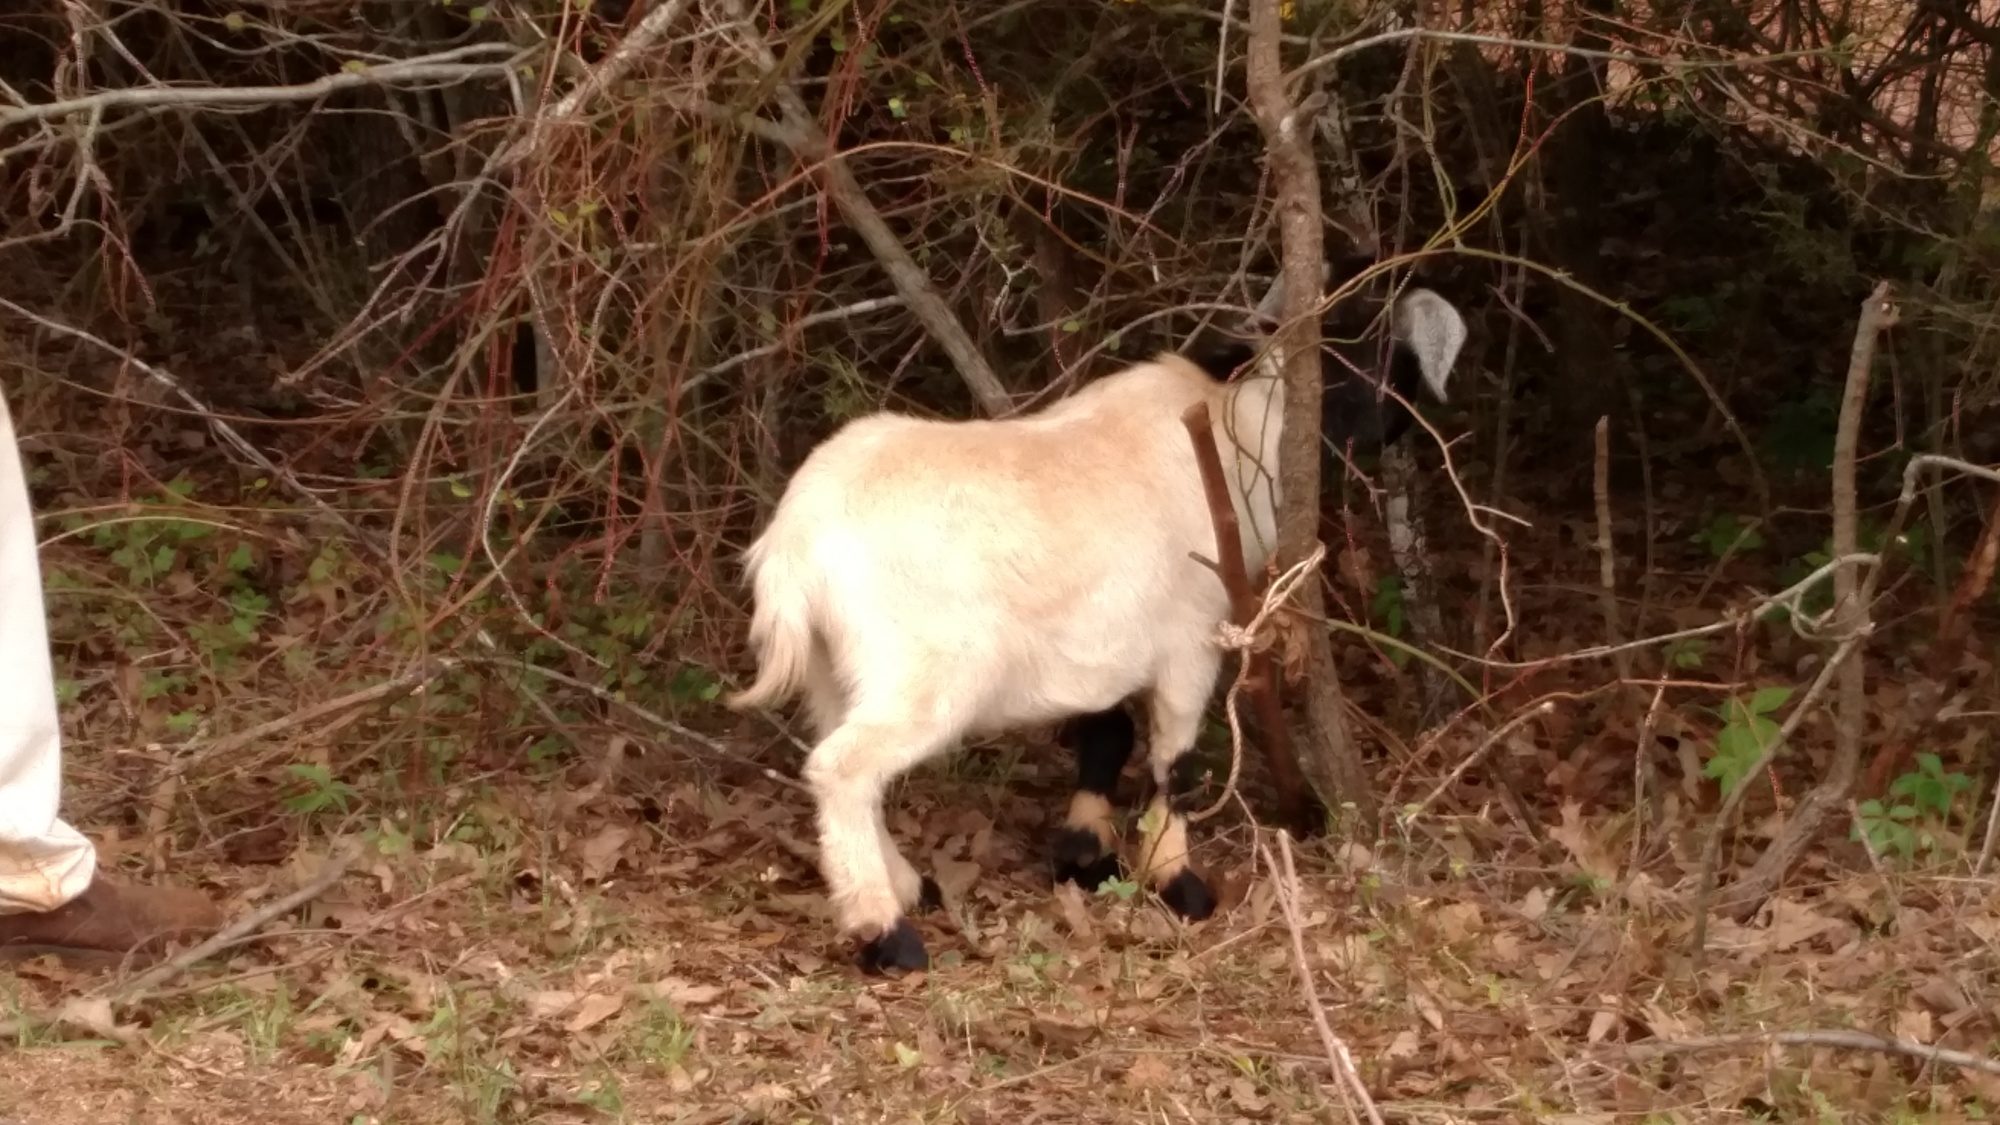 Big weekend.. Had to free neighbors goat...